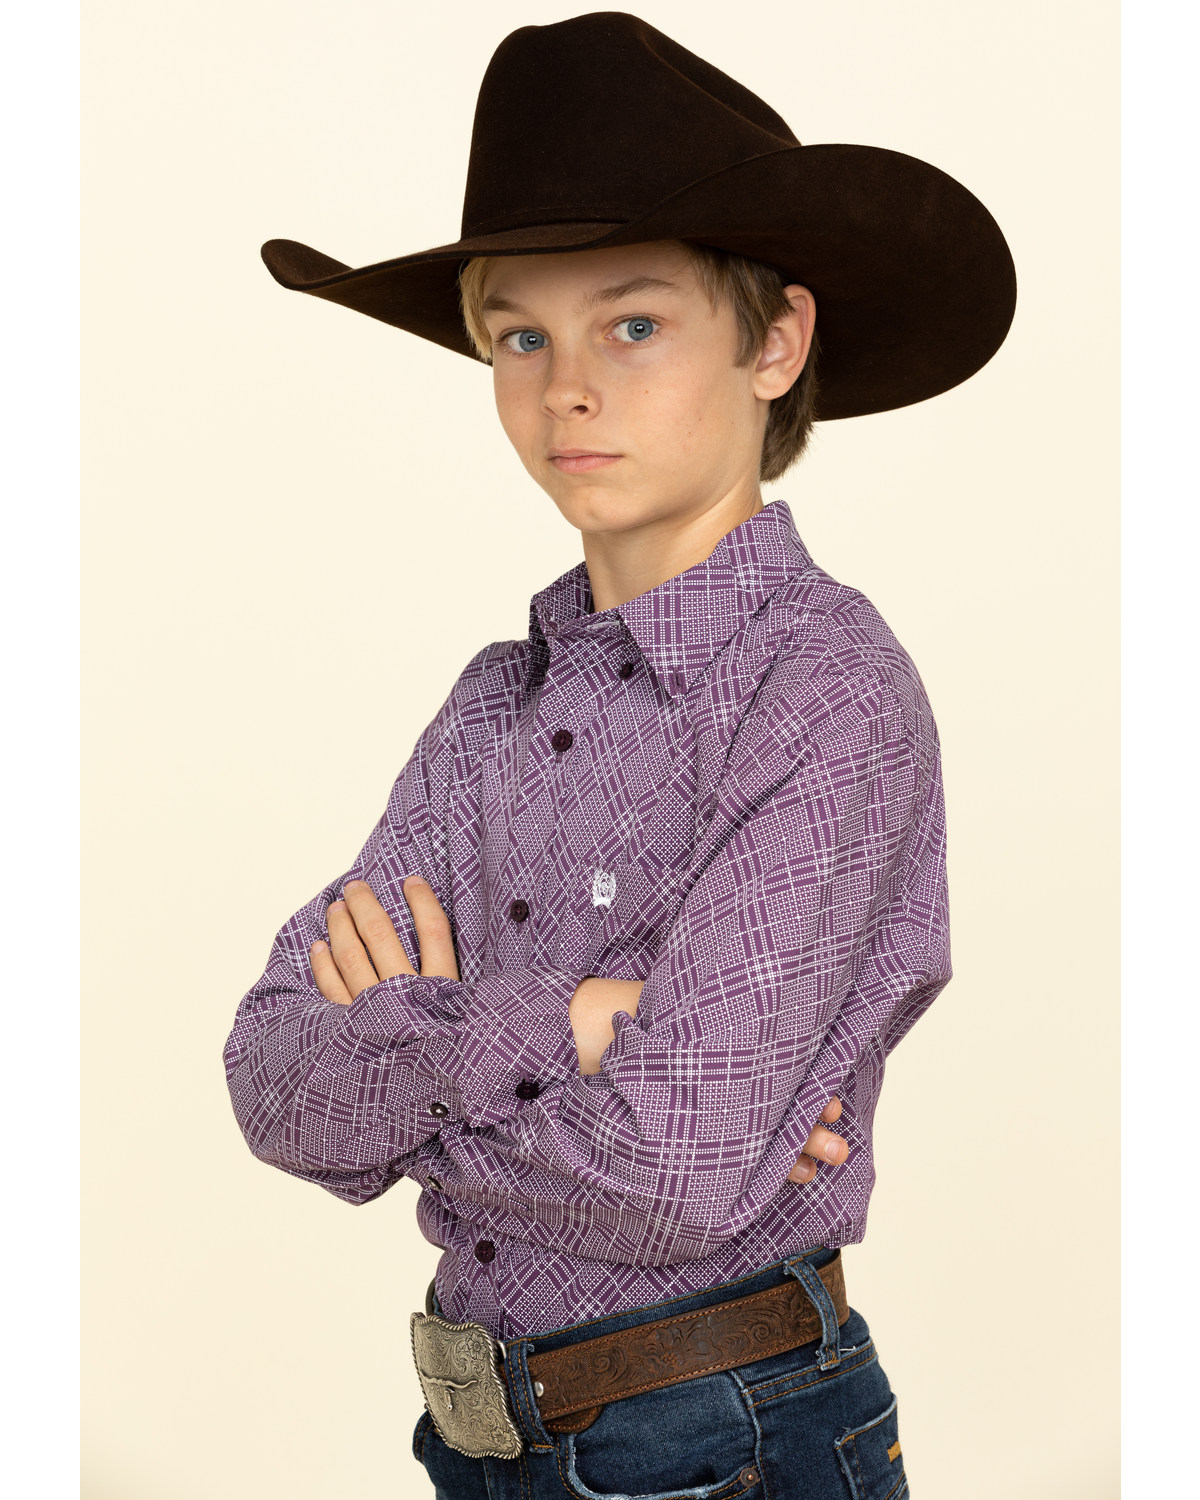 NWT Boys Cinch Western Snap front Shirt Purple Plaid Sz M L or XL Long Sleeve 